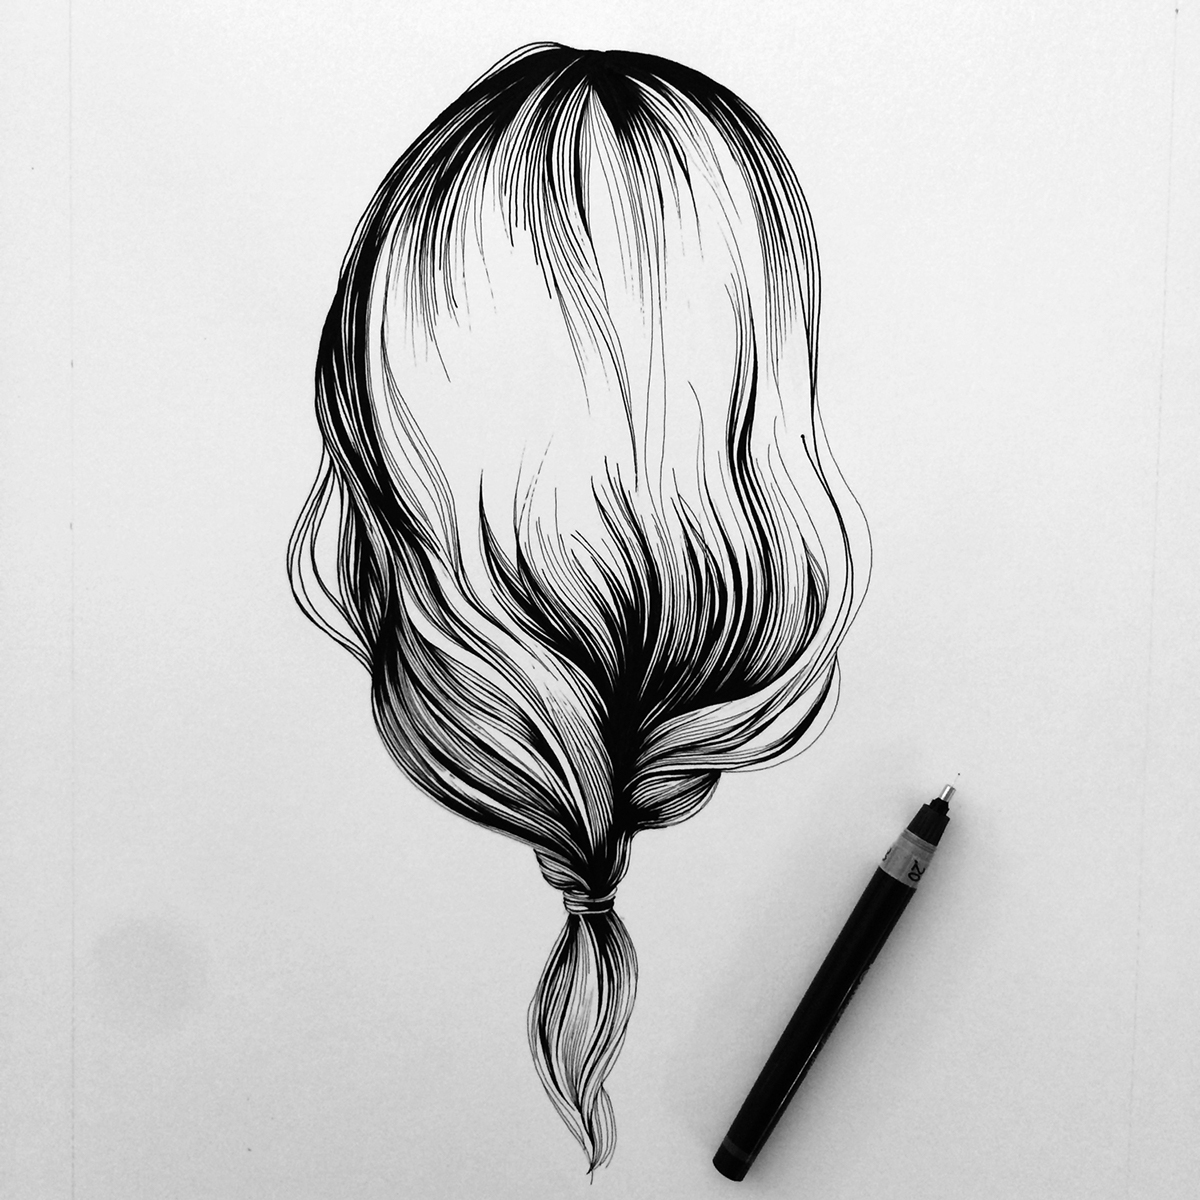 dessin postiche   hair chevelure art paint ink paper detail rotering black Arabesque volute art appliqué